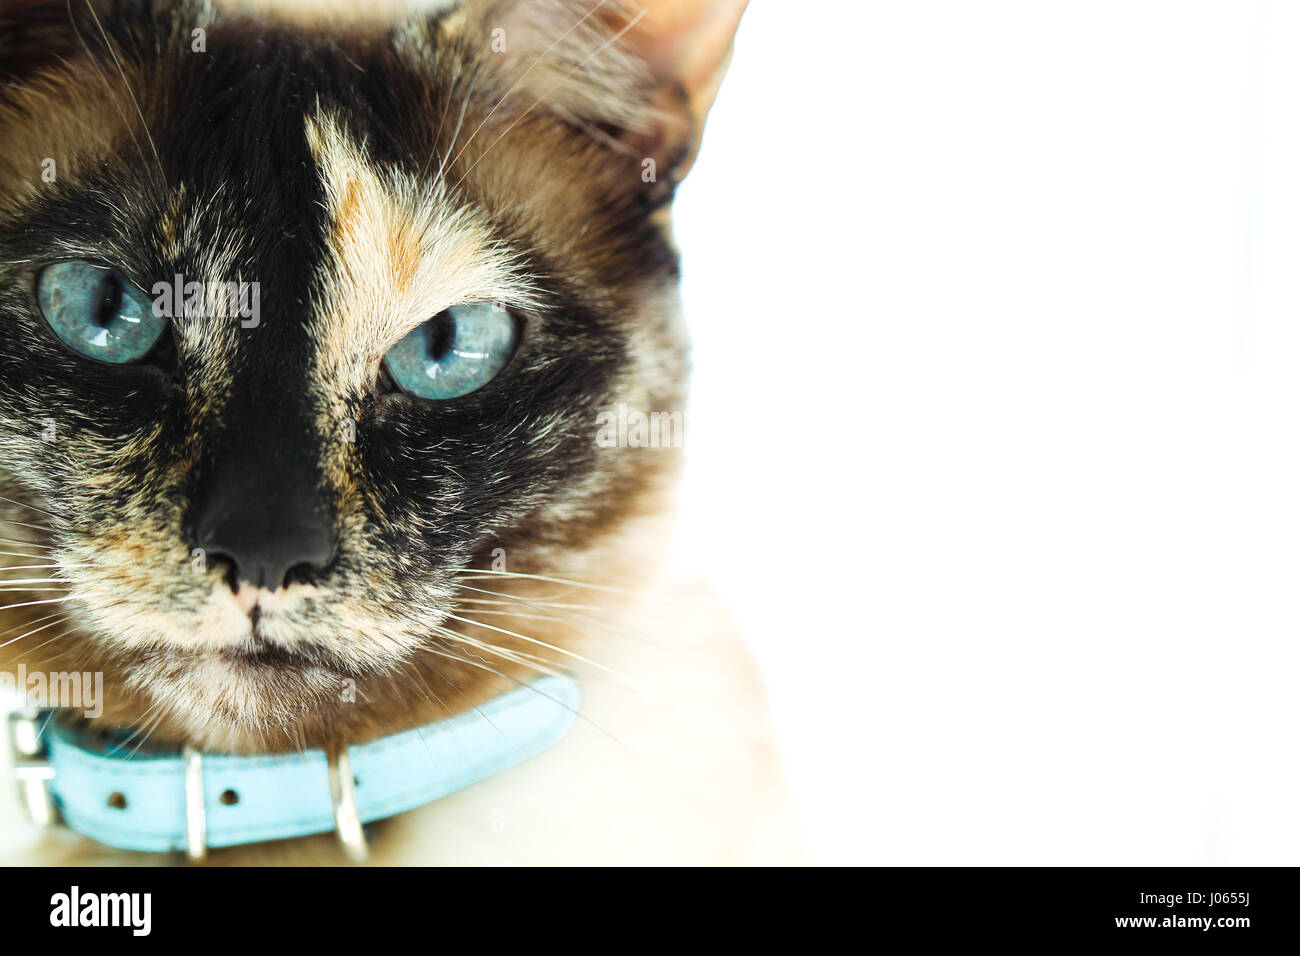 Beaux Yeux bleu tacheté de couleur unique sur un closeup portrait d'un chat siamois écaille de visage. Communément appelé un "Tortie Point'. Banque D'Images